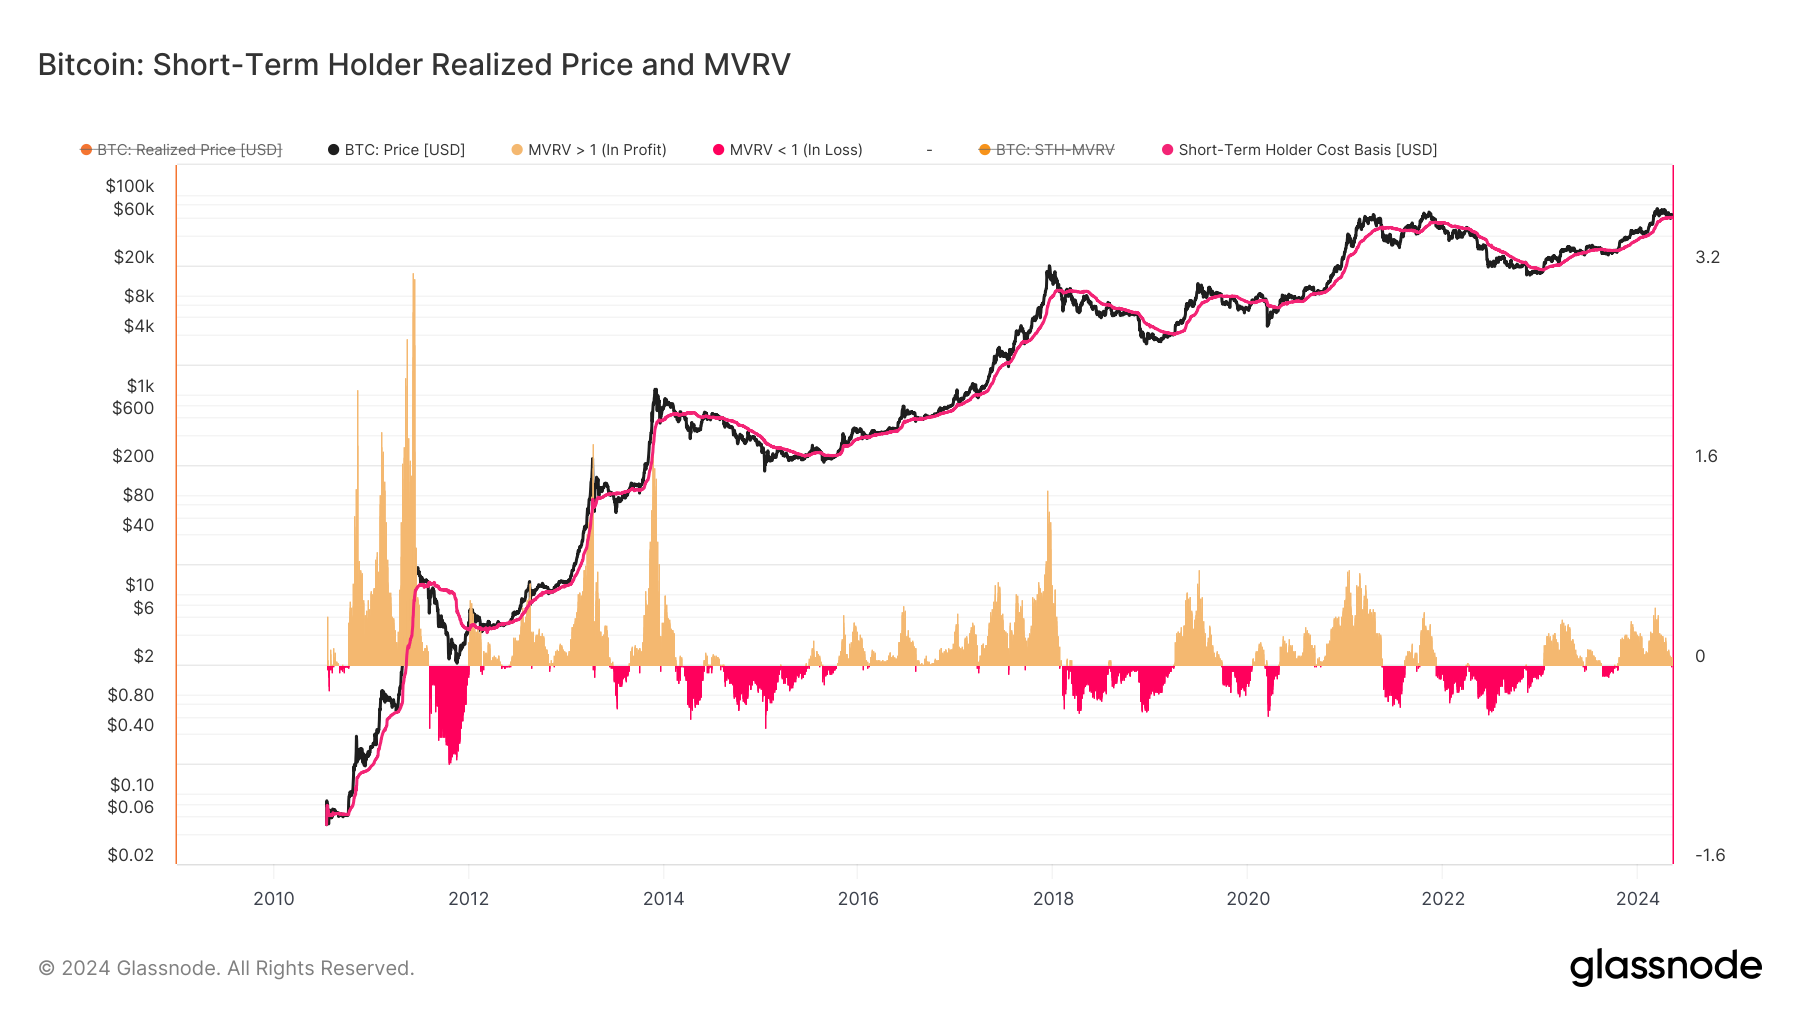 قیمت واقعی و MVRV دارنده کوتاه مدت: (منبع: گلاسنود)